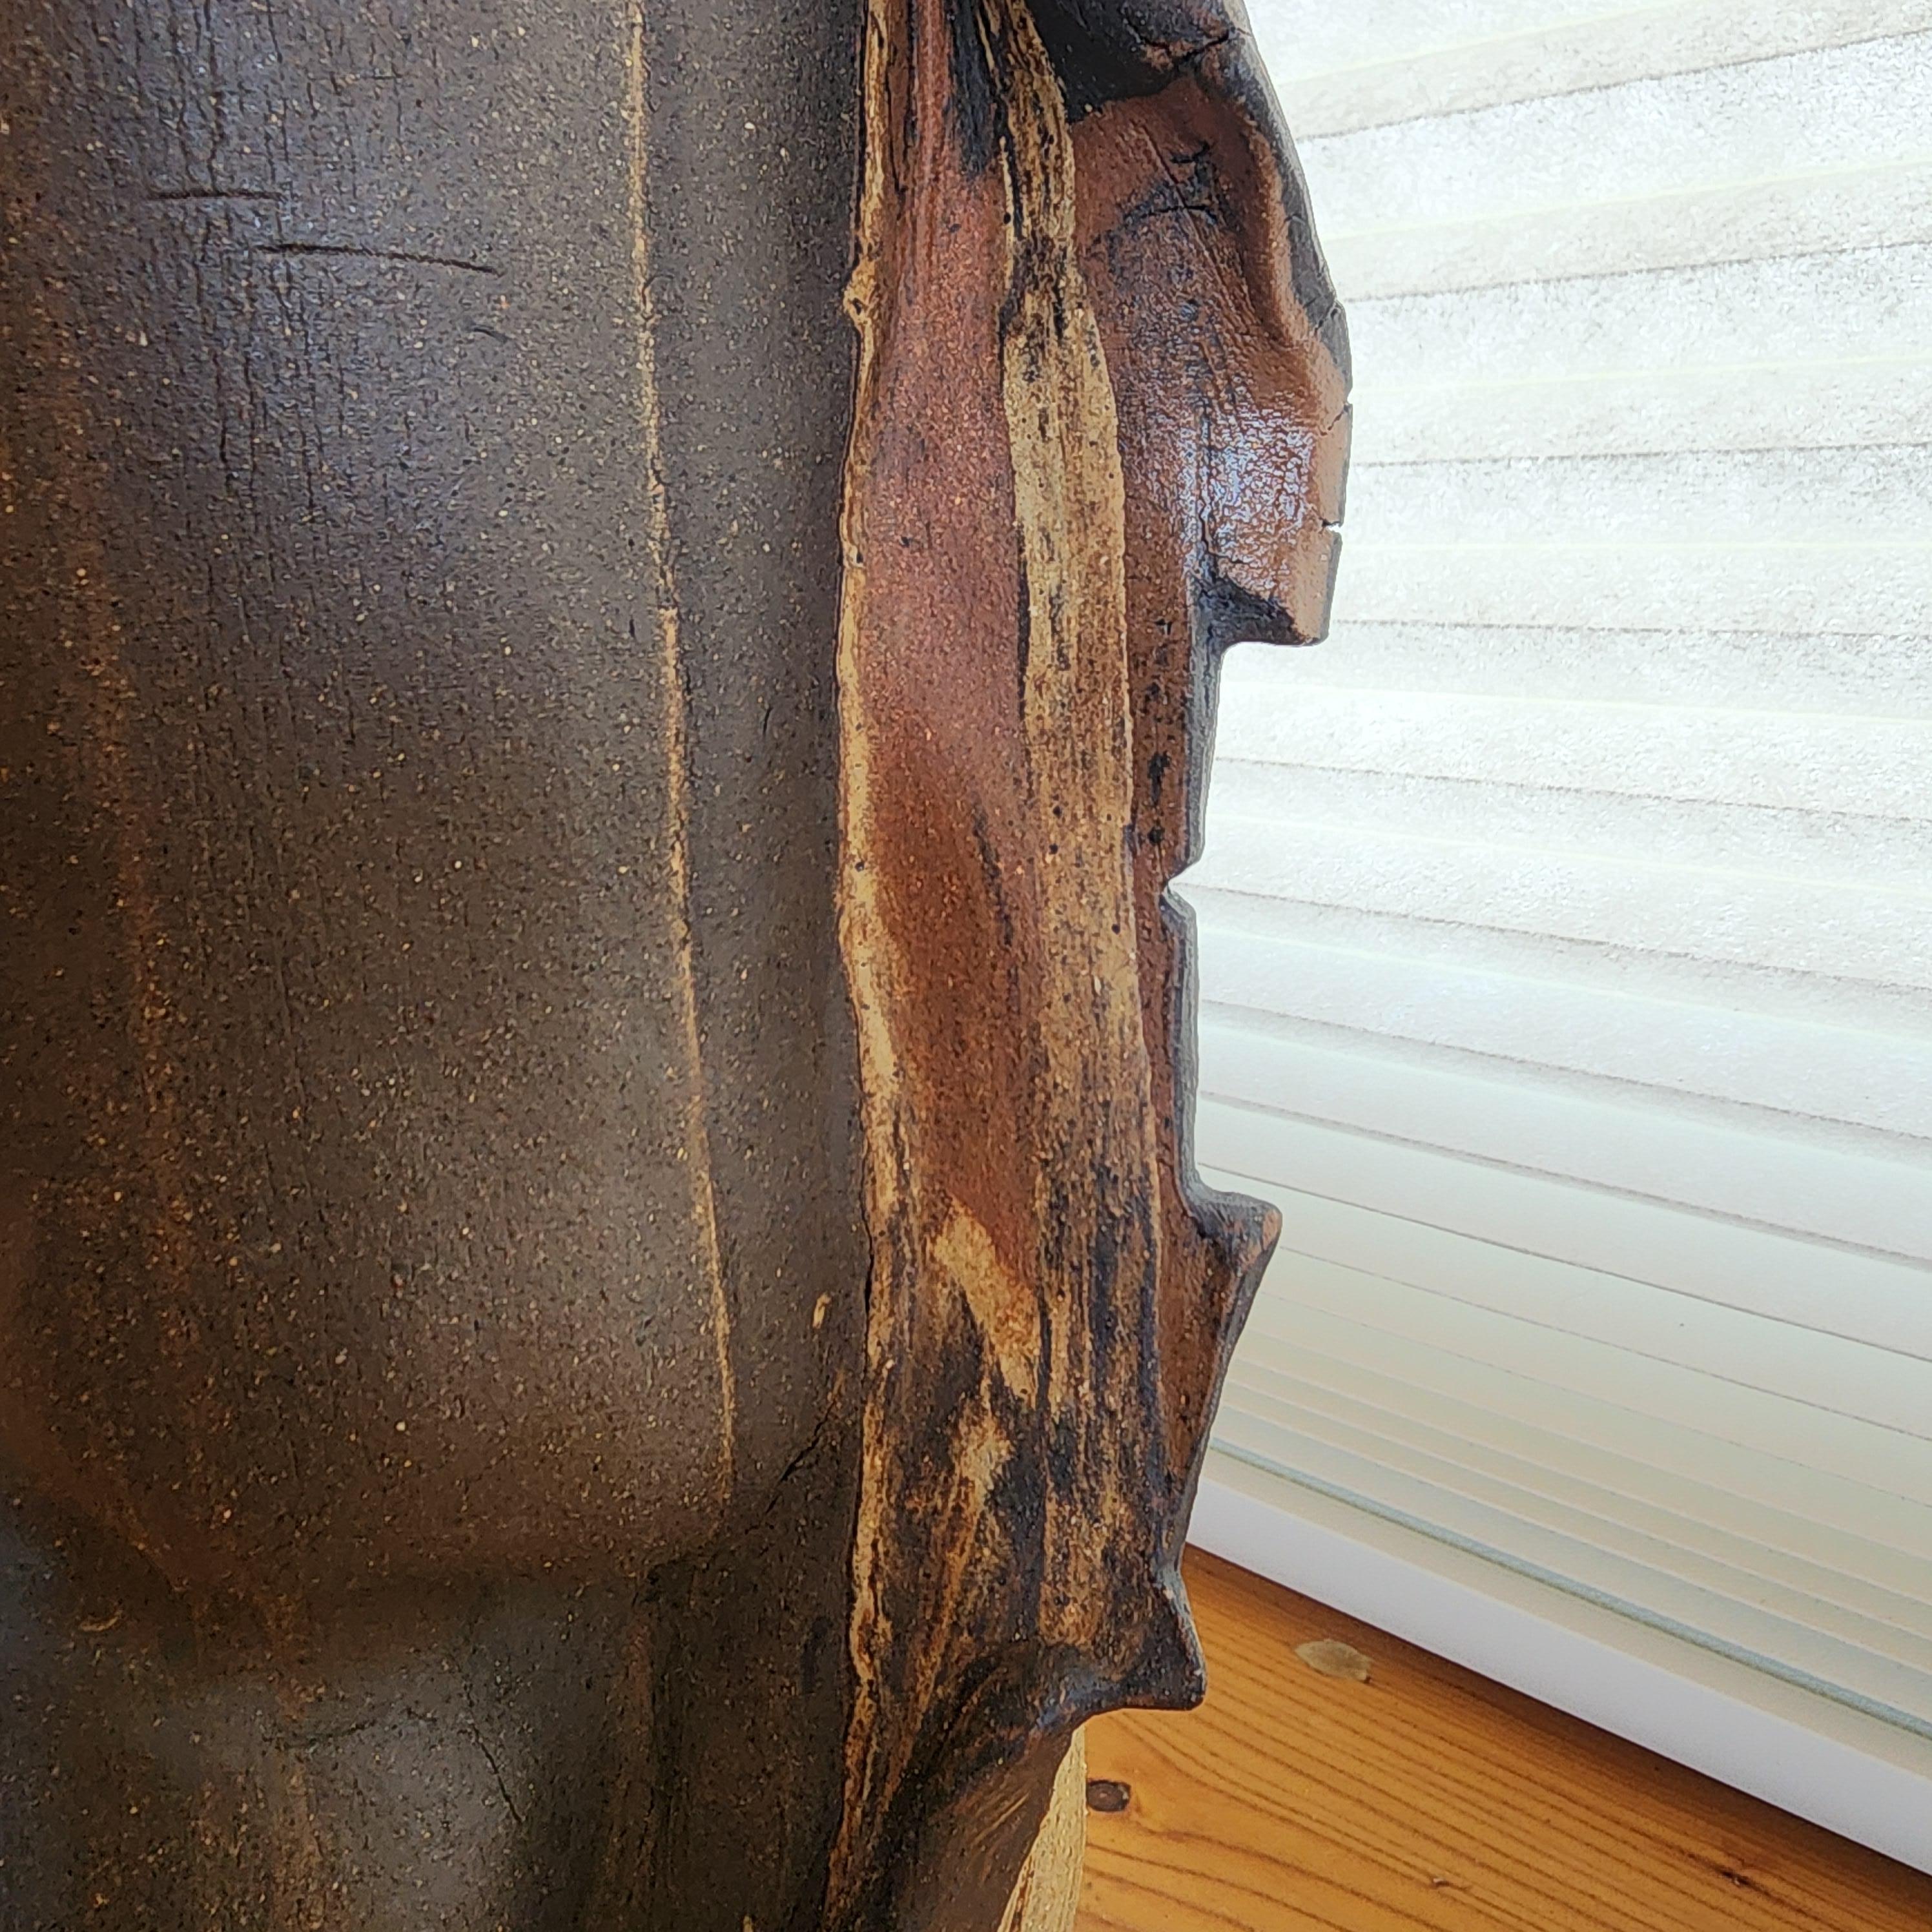  La sculpture en céramique de corps d'argile combinés, les processus uniques développés par Anna Bush Crews, s'appuient sur les qualités inhérentes au matériau, la façon dont il se lisse ou non, la façon dont il s'étire ou se brise dans des actions